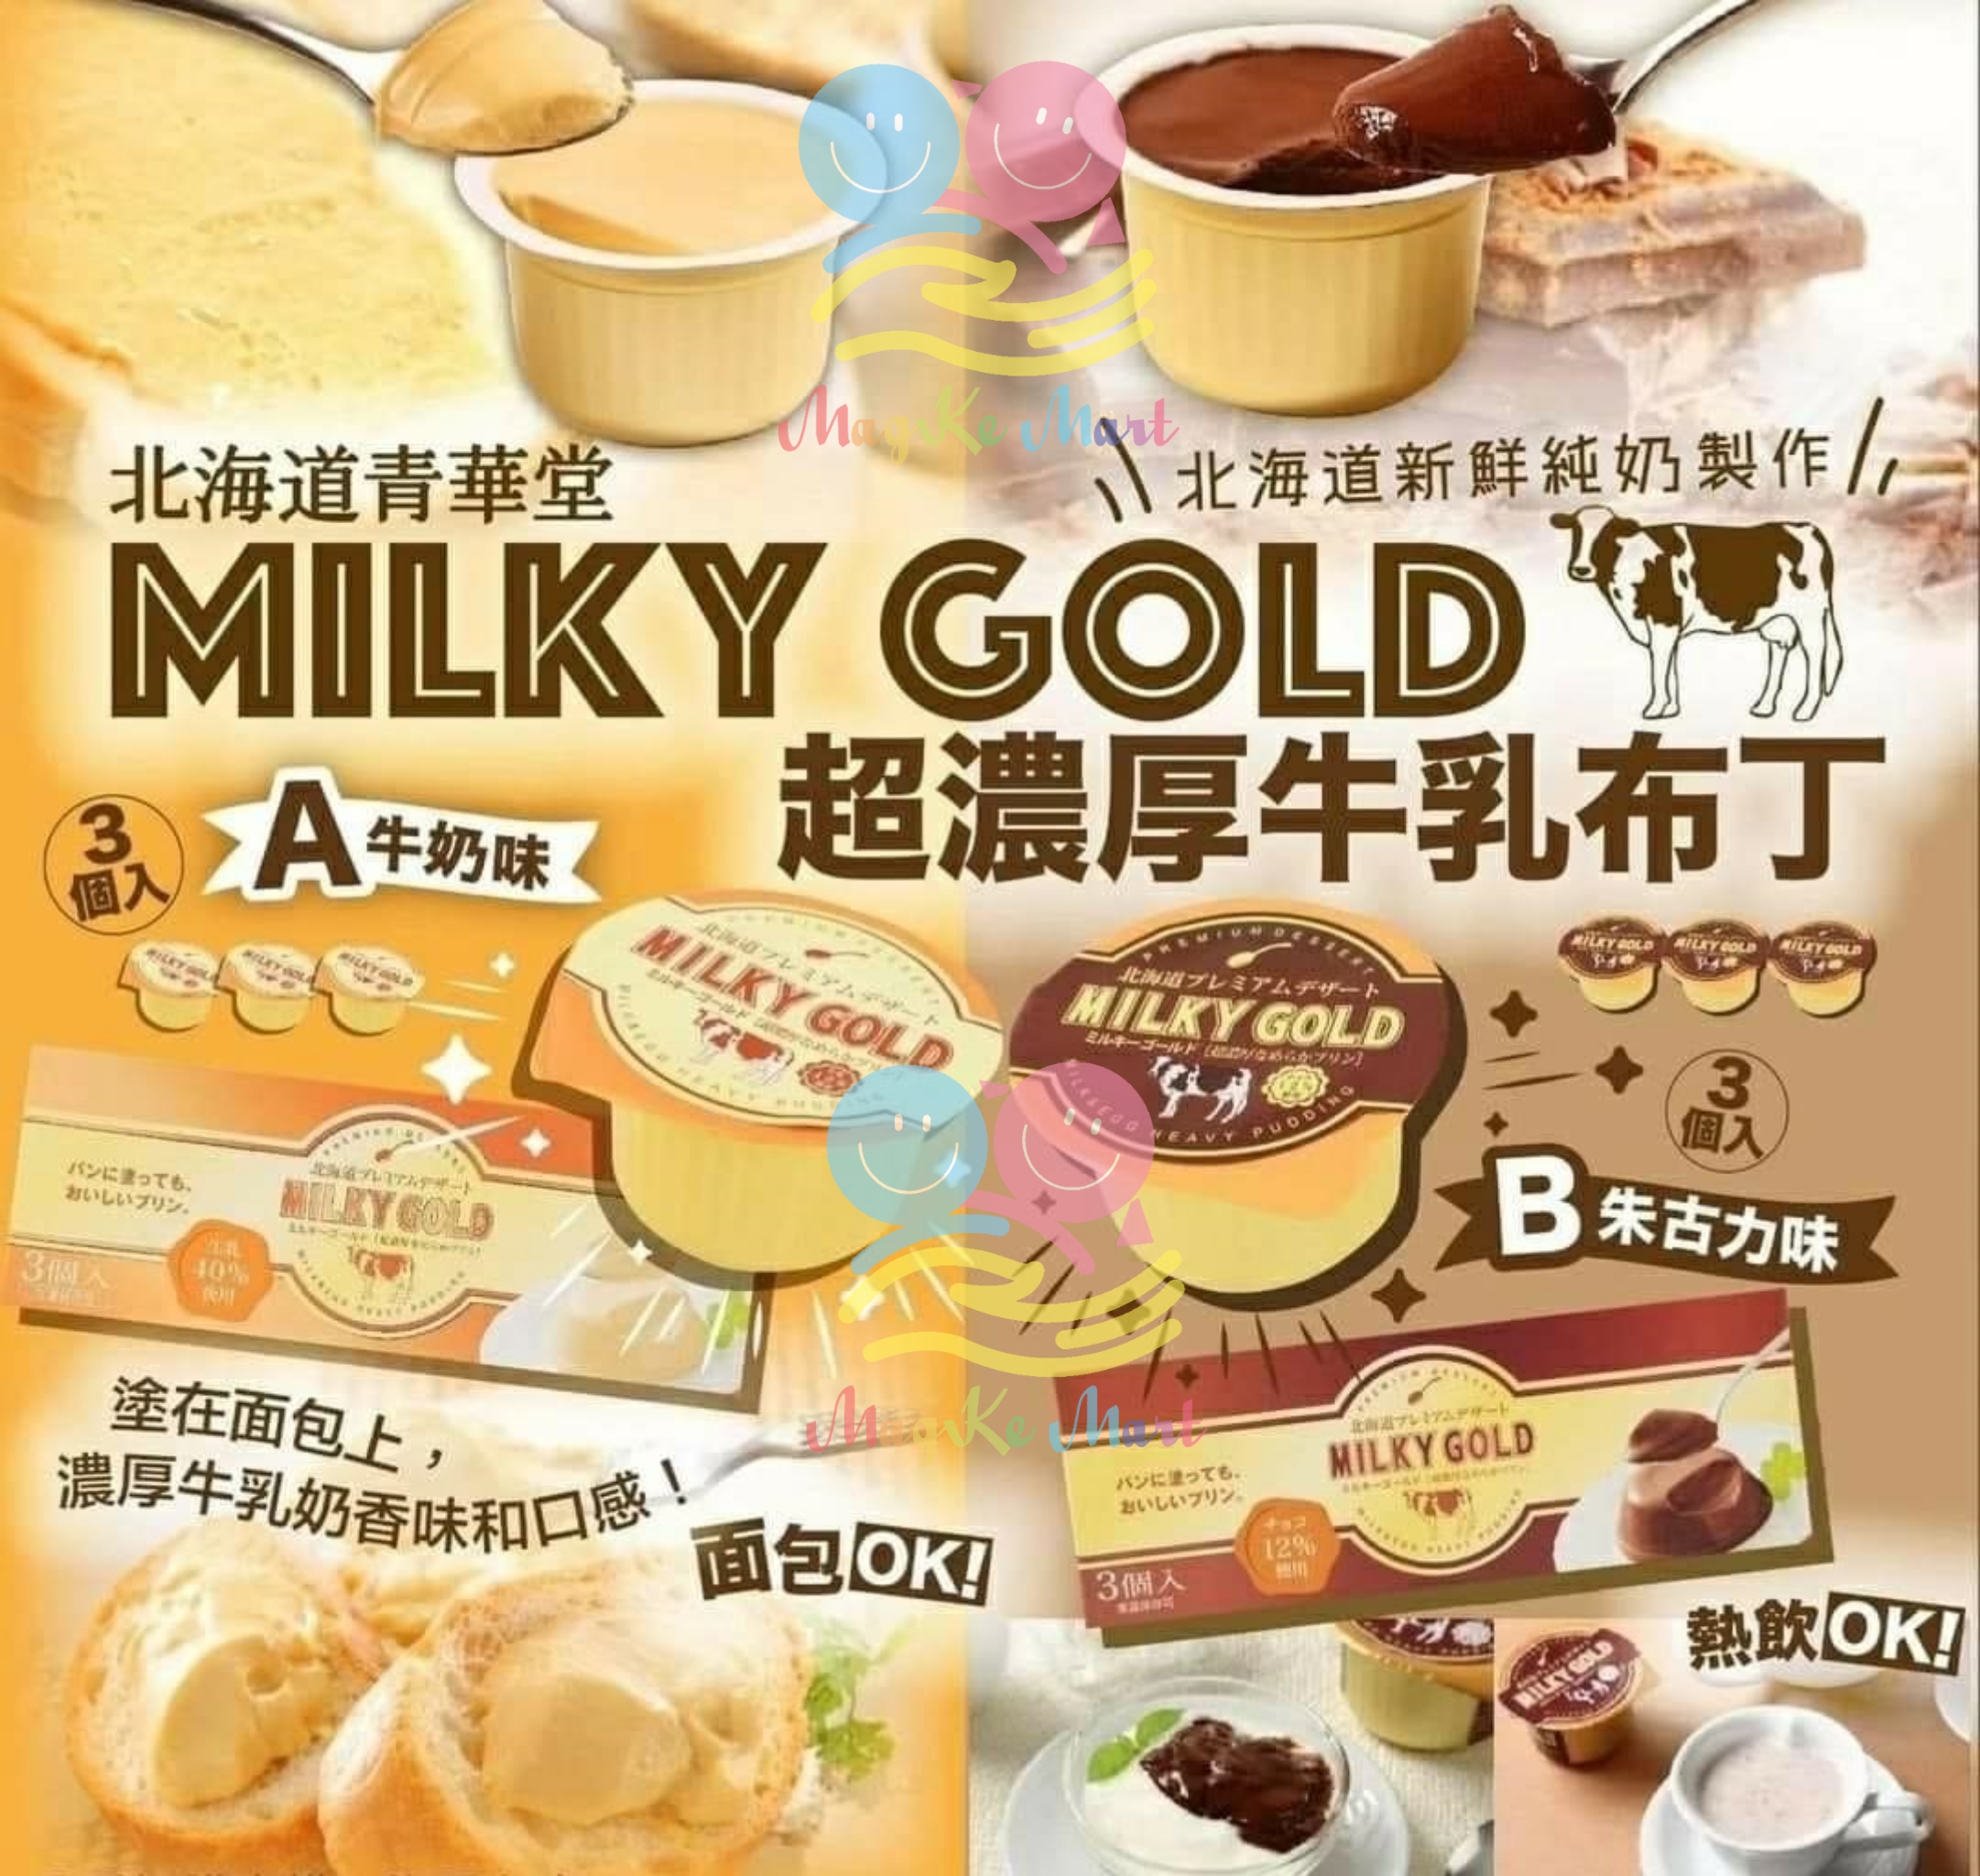 日本北海道 MILKY GOLD 超濃厚布丁(1盒3個) (B) 朱古力味